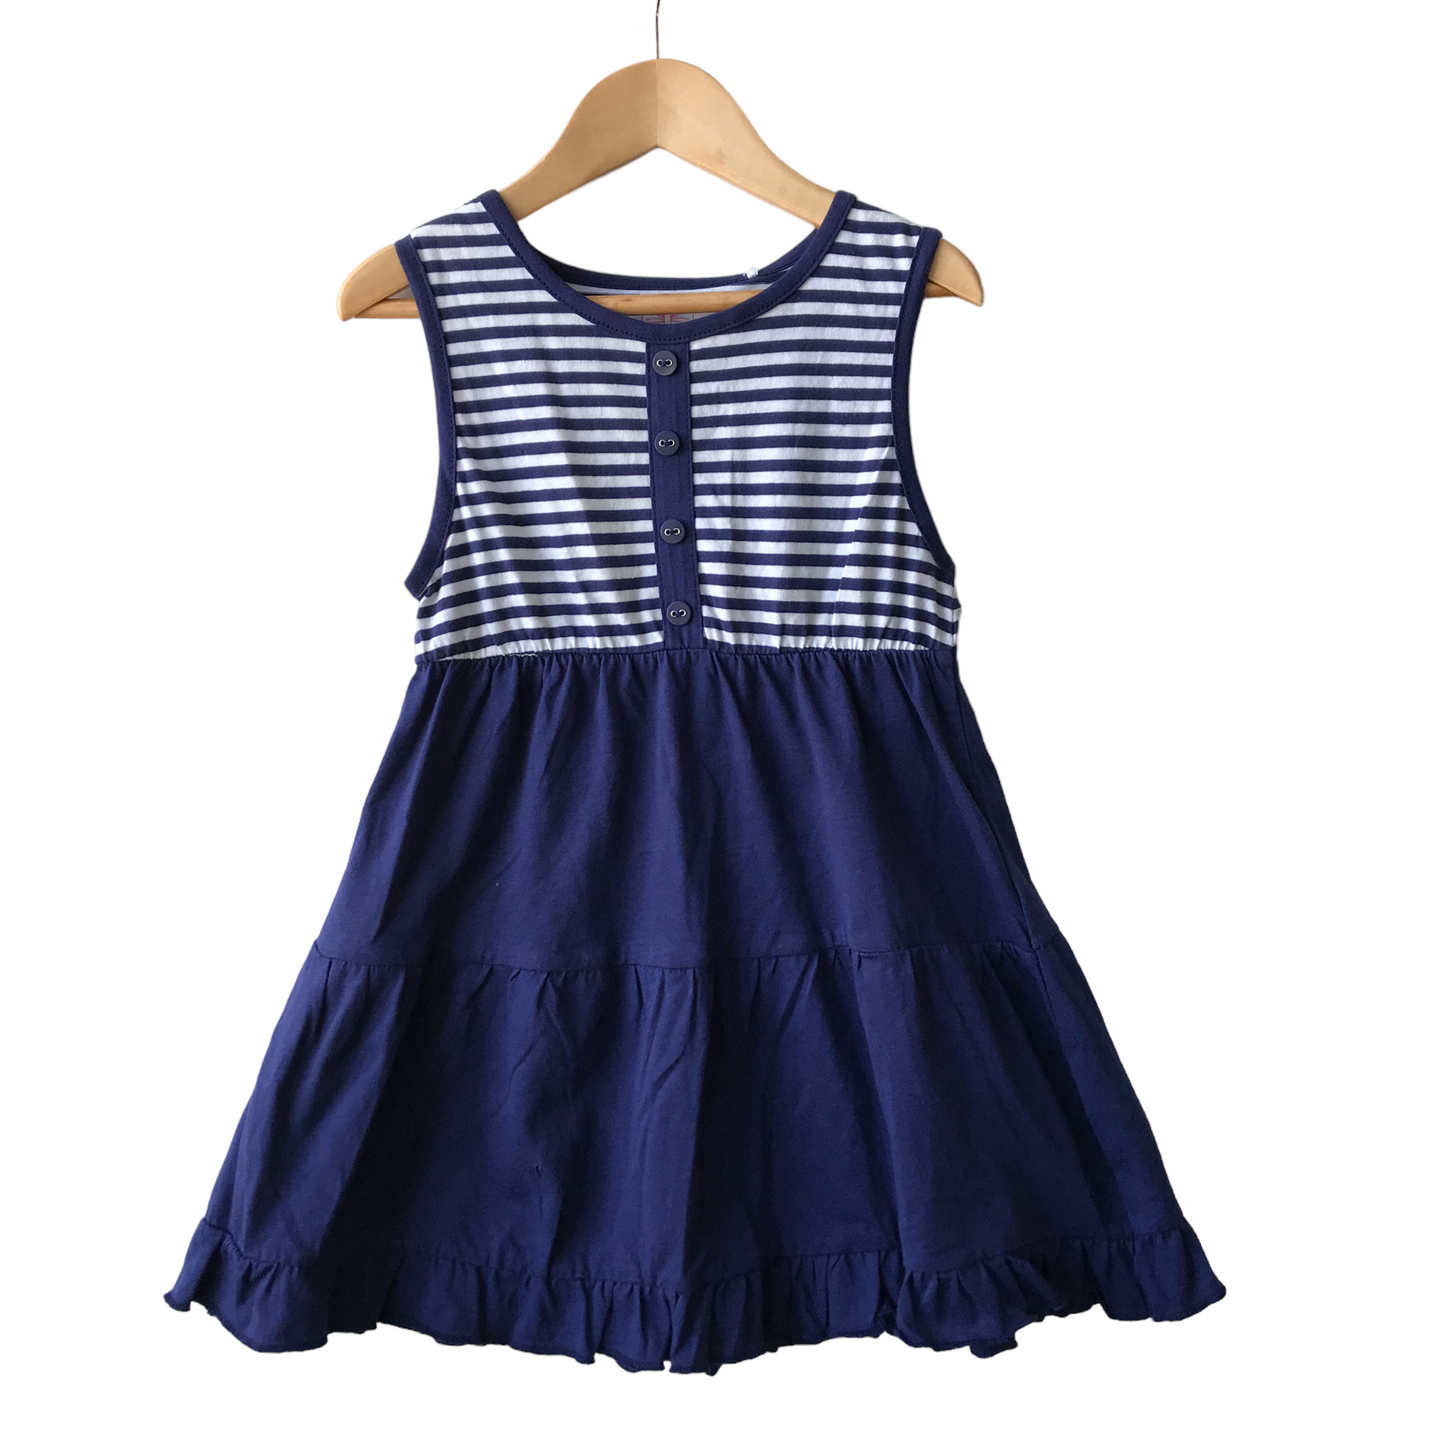 Tu Navy and White Stripy Cotton Dress Age 5-6